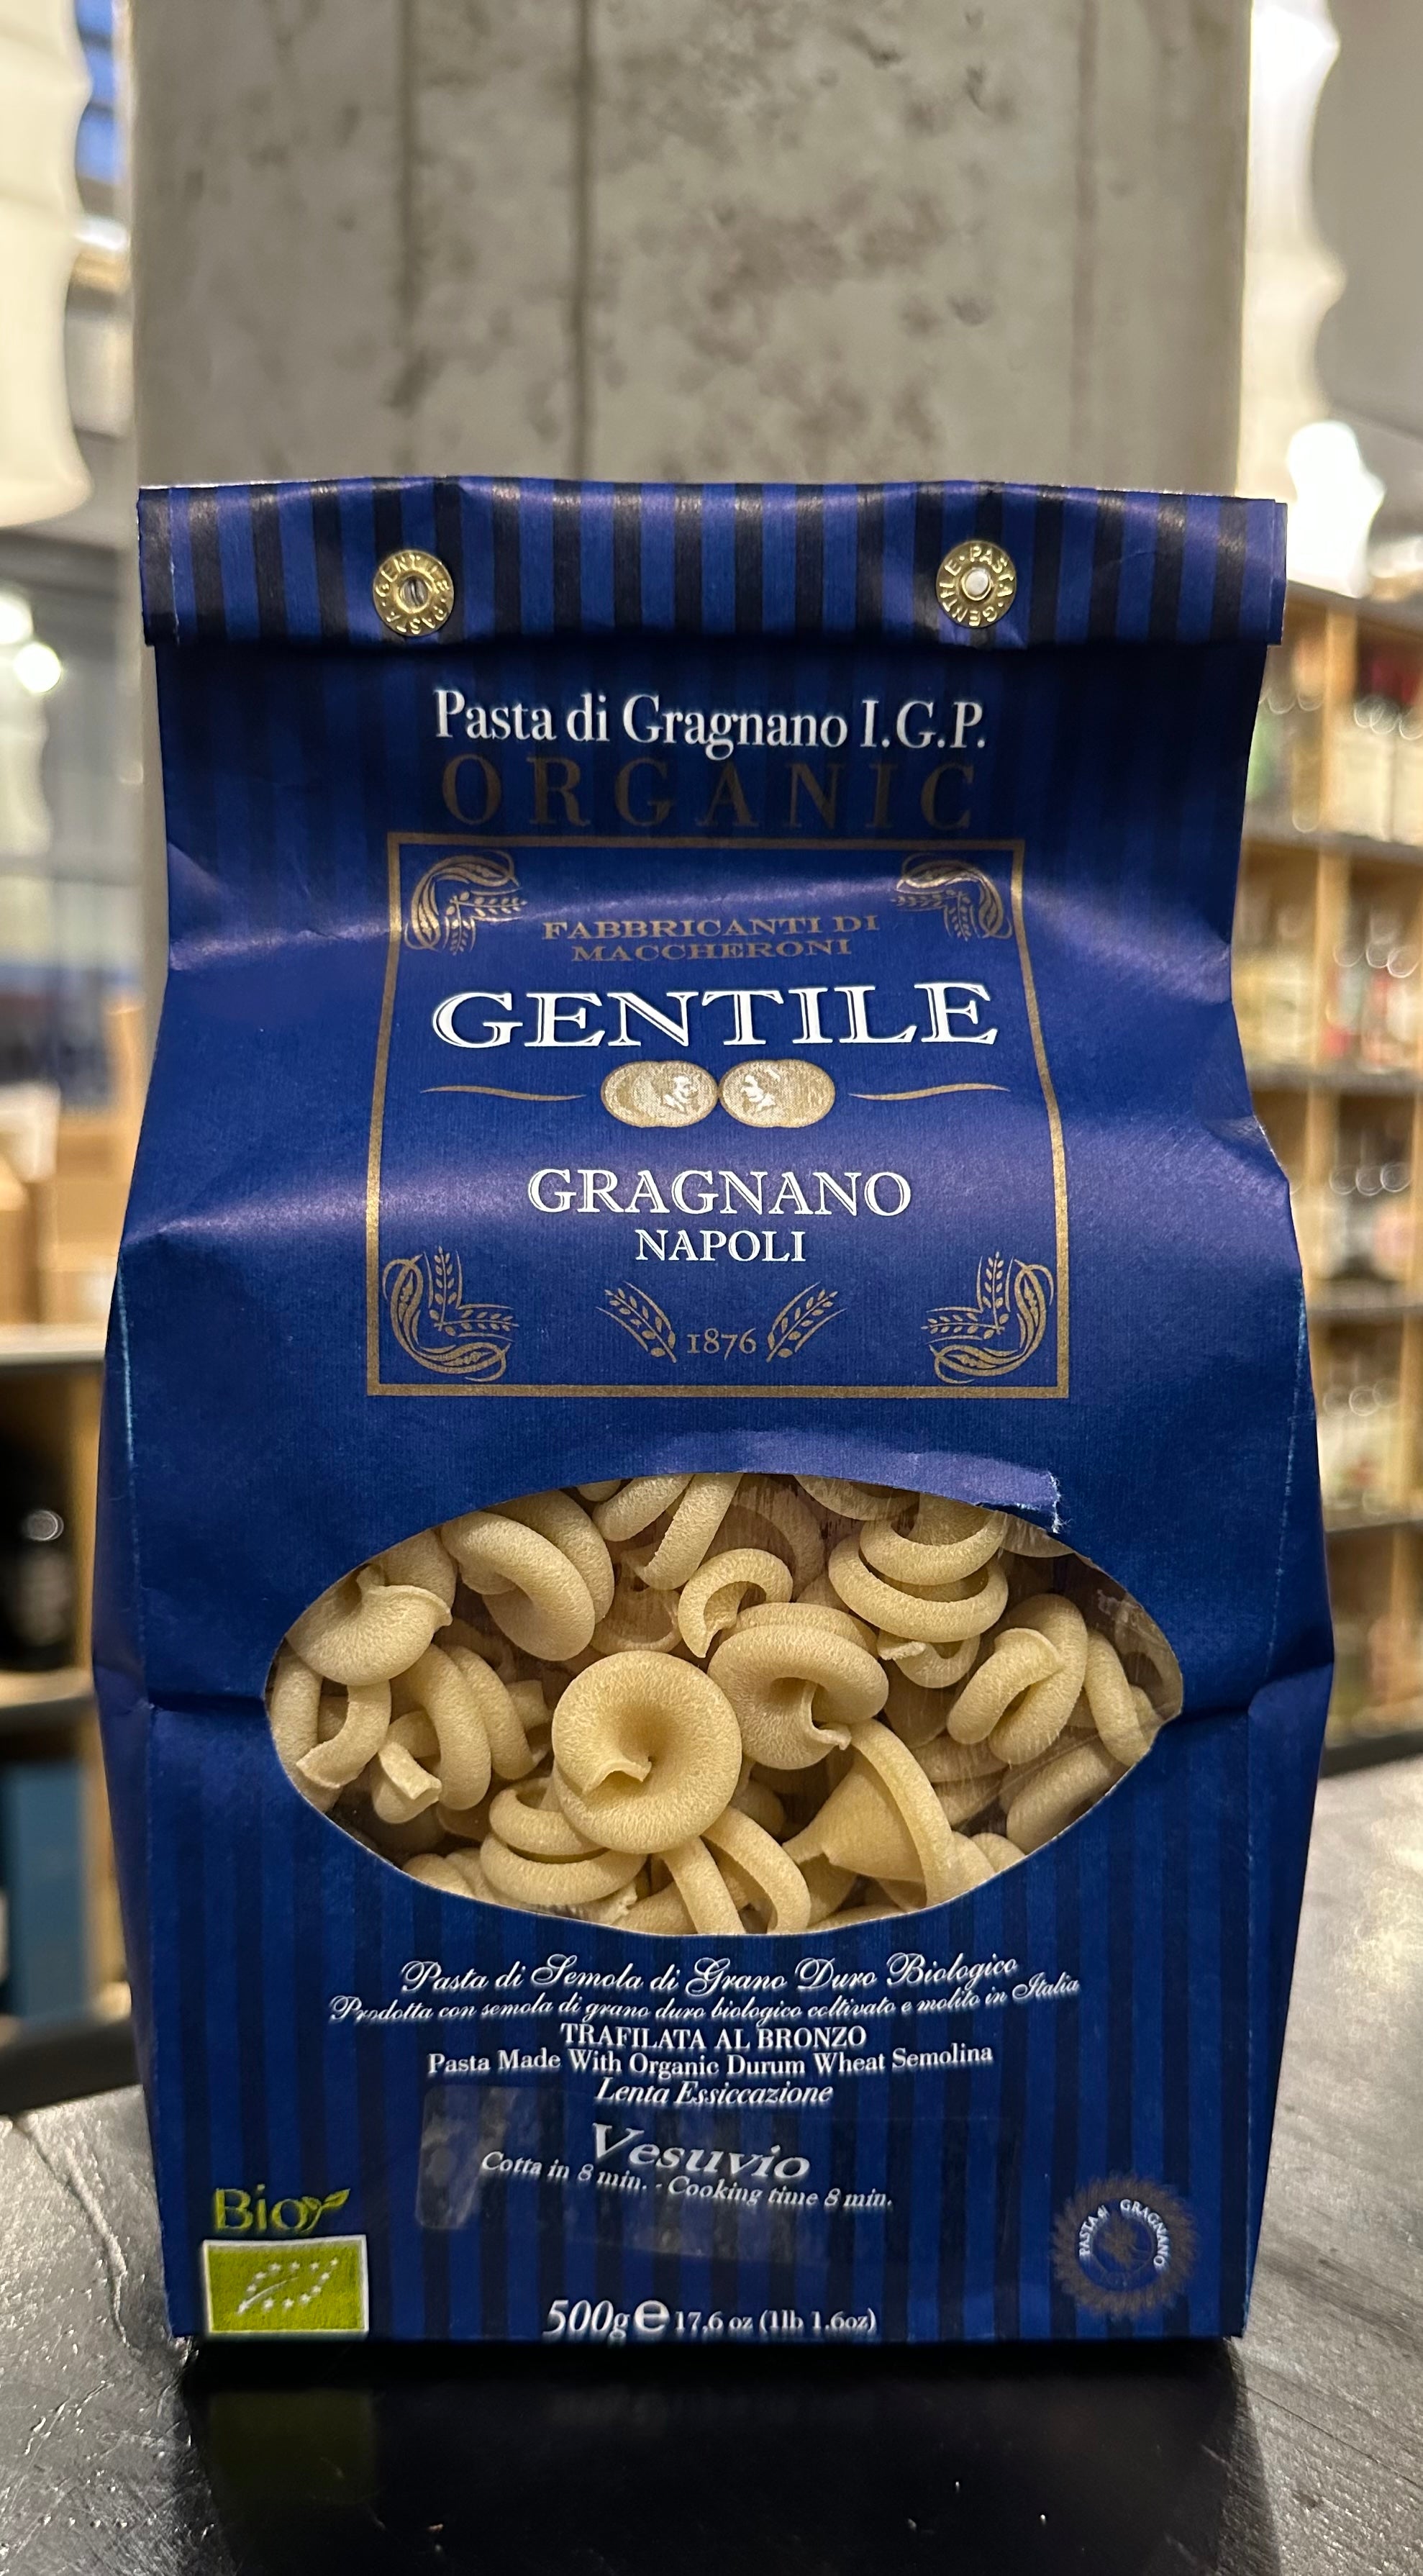 Gentile "Vesuvio" Pasta di Gragnano I.G.P.